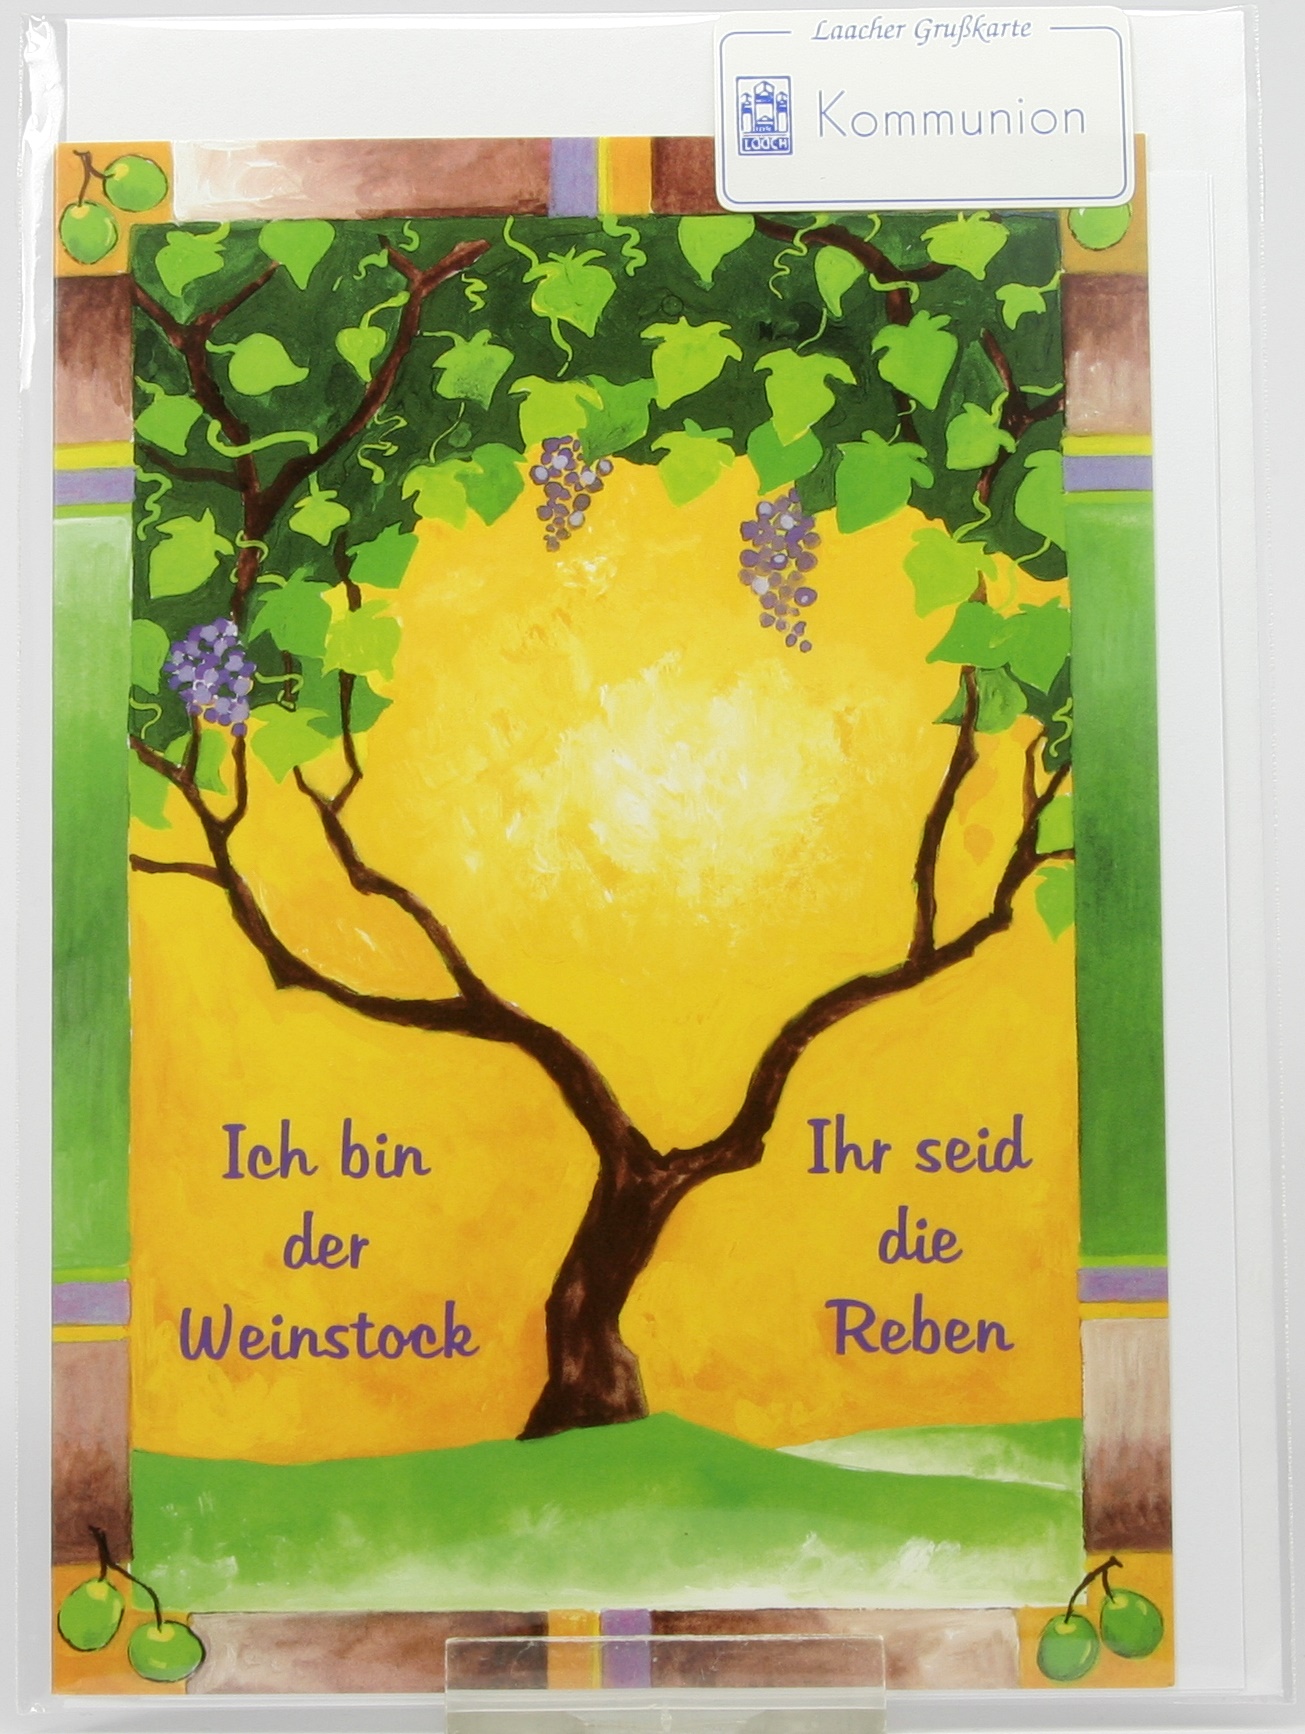 Kommunionkarte - Weinstock & Reben